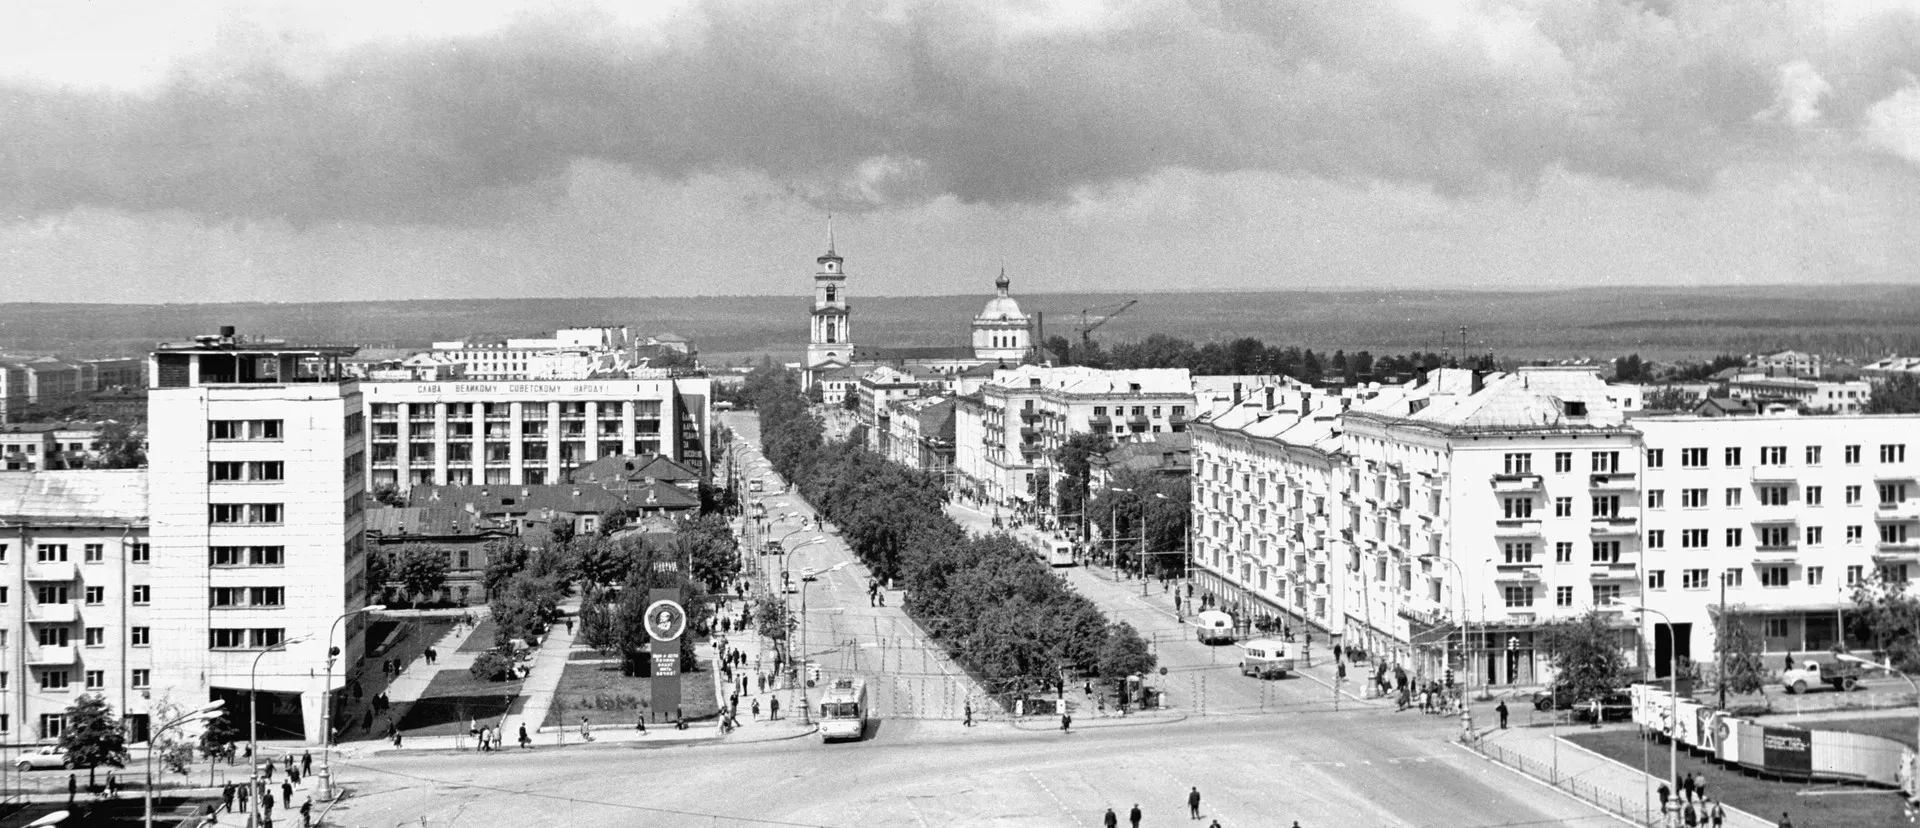 Комсомольский проспект, вид на Октябрьскую площадь, 1969 г. / Komsomolsky Avenue, view of Oktyabrskaya Square, 1969